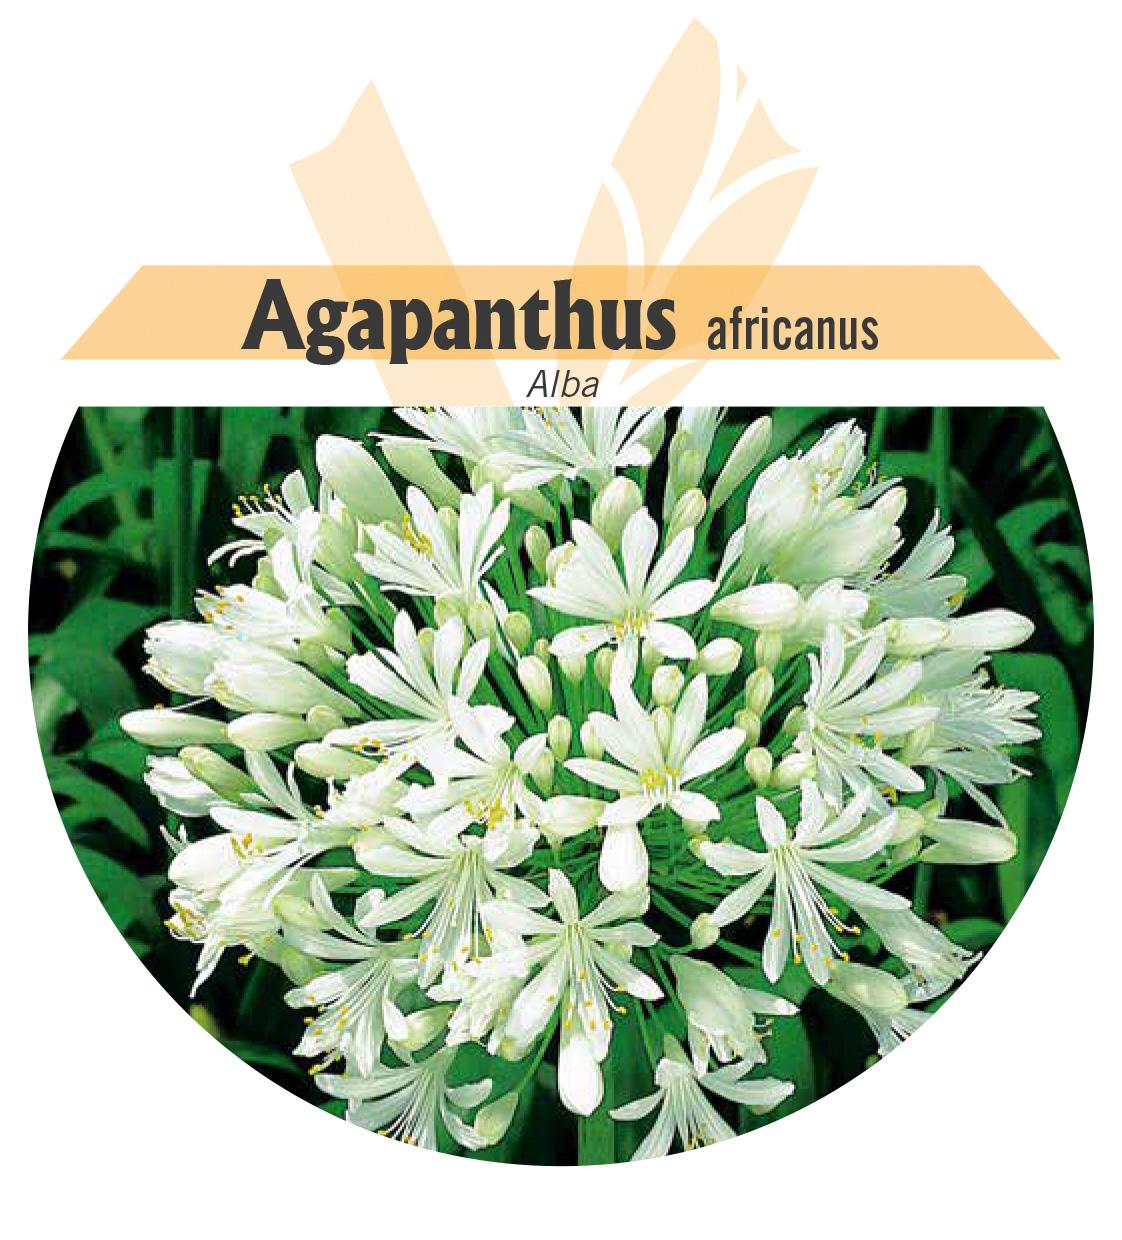 Agapanthus africanus